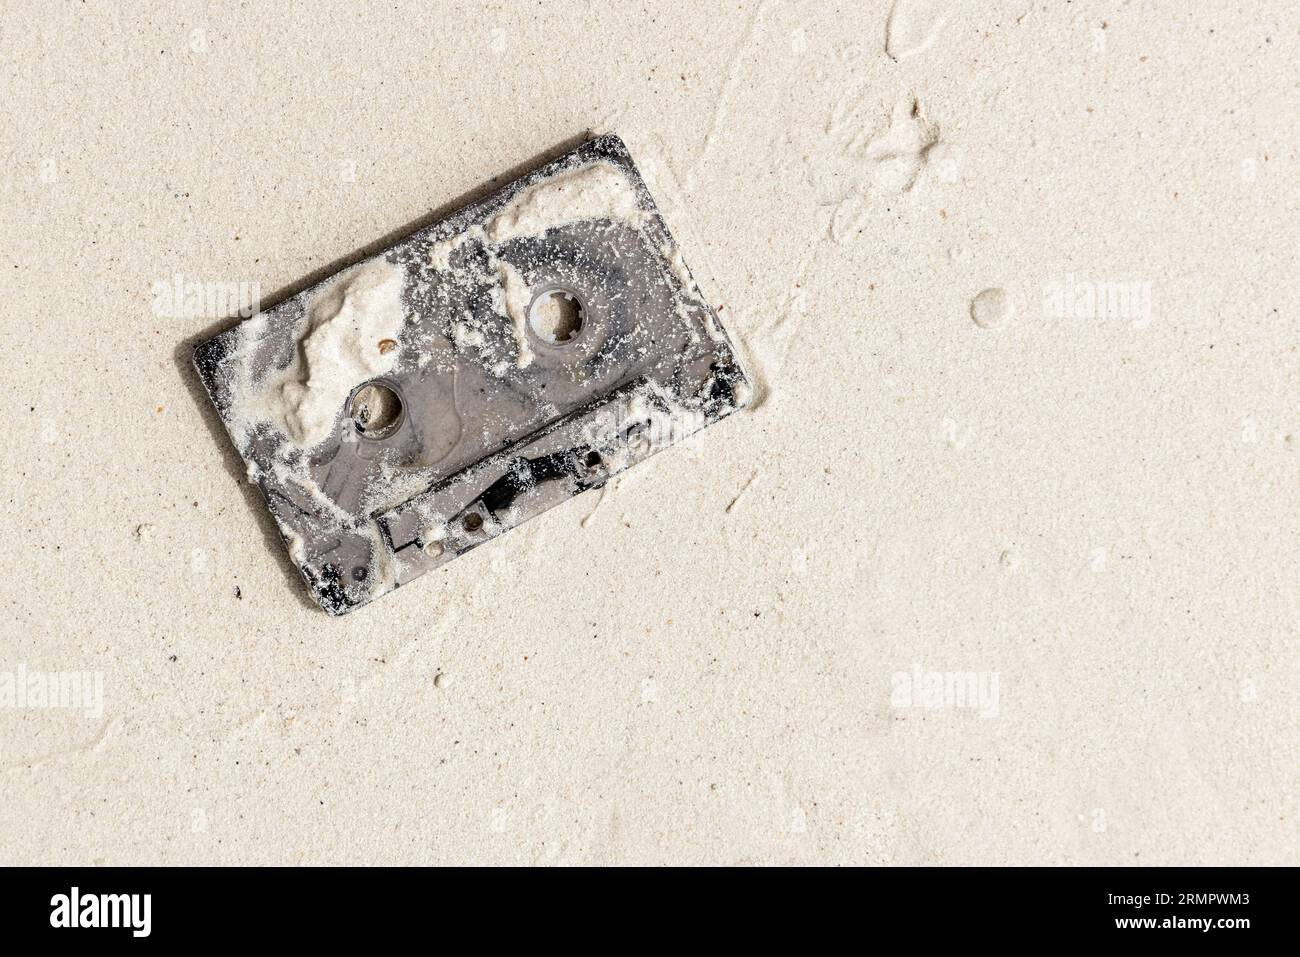 Gebrauchte Tonbandkassette liegt auf nassweißem Sand am Strand, Draufsicht Stockfoto